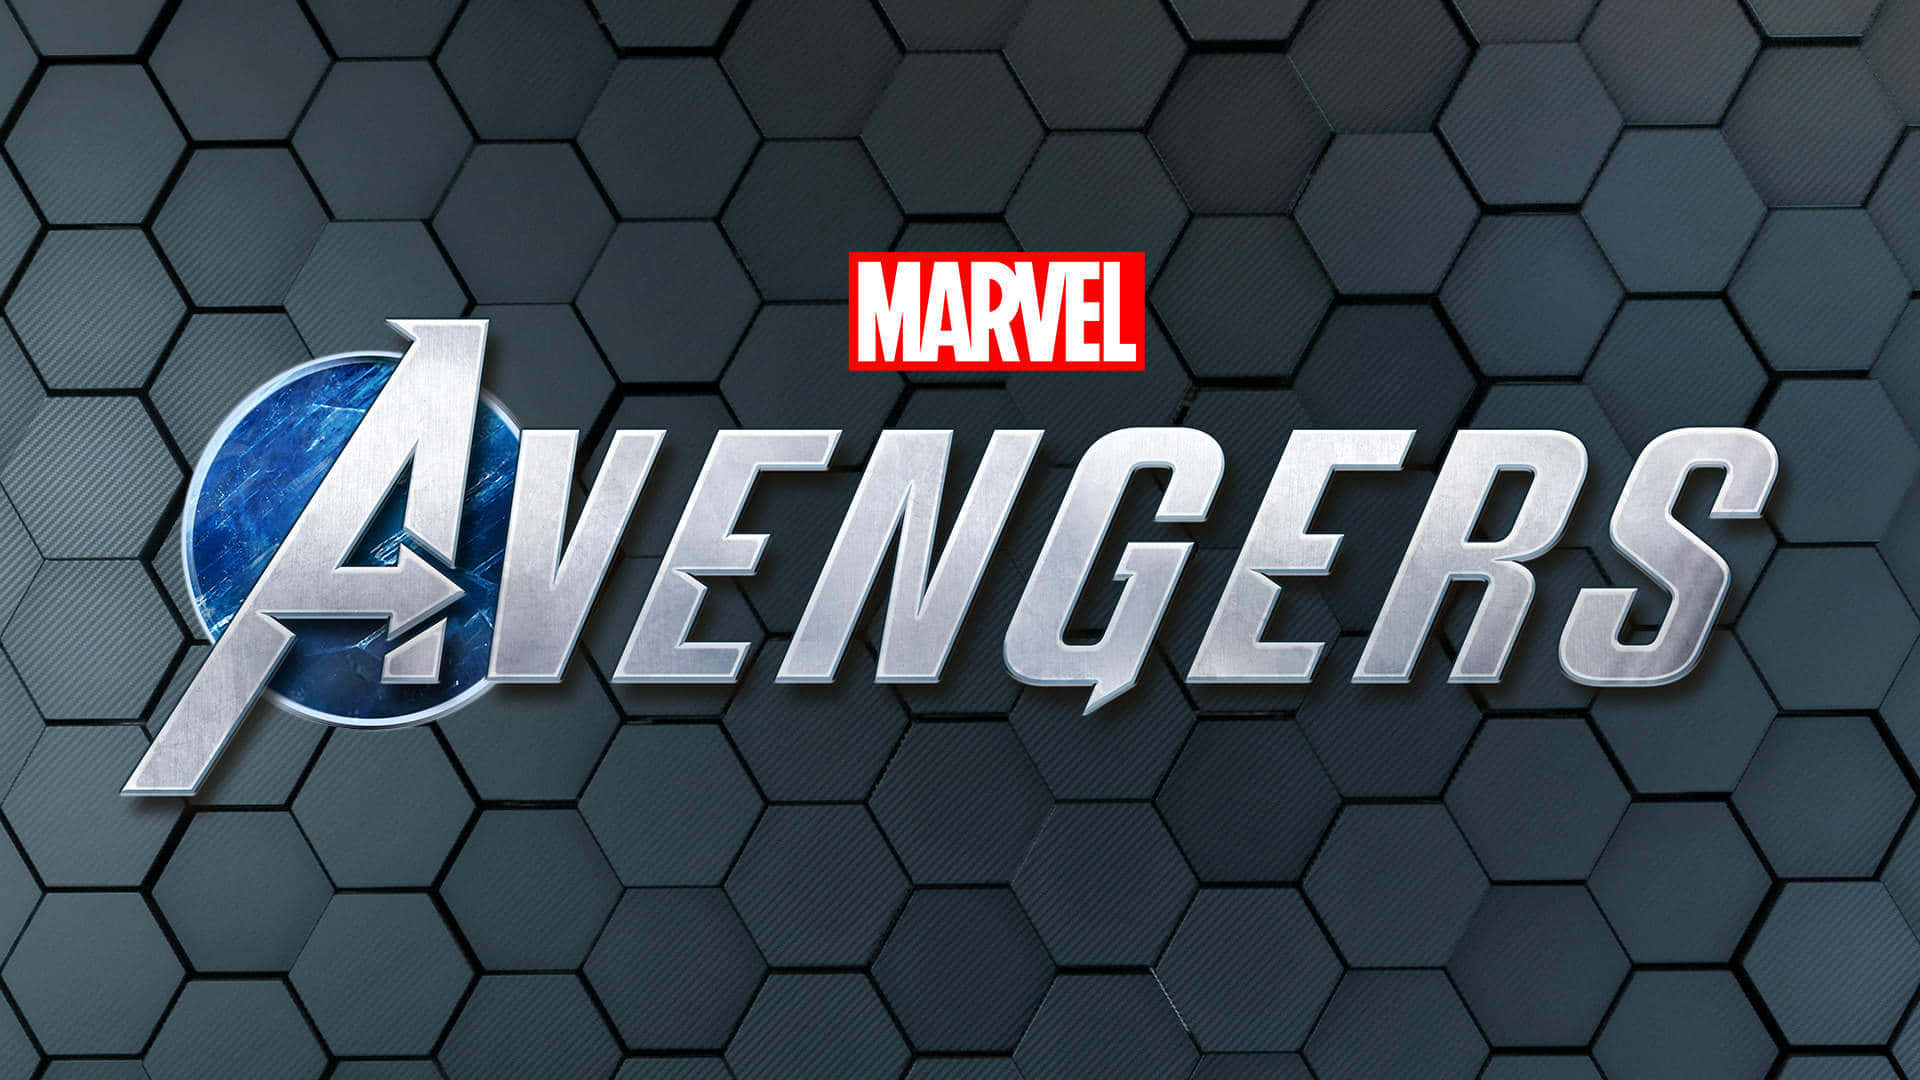 Marvel Avengers Game Logo Wordmark Wallpaper